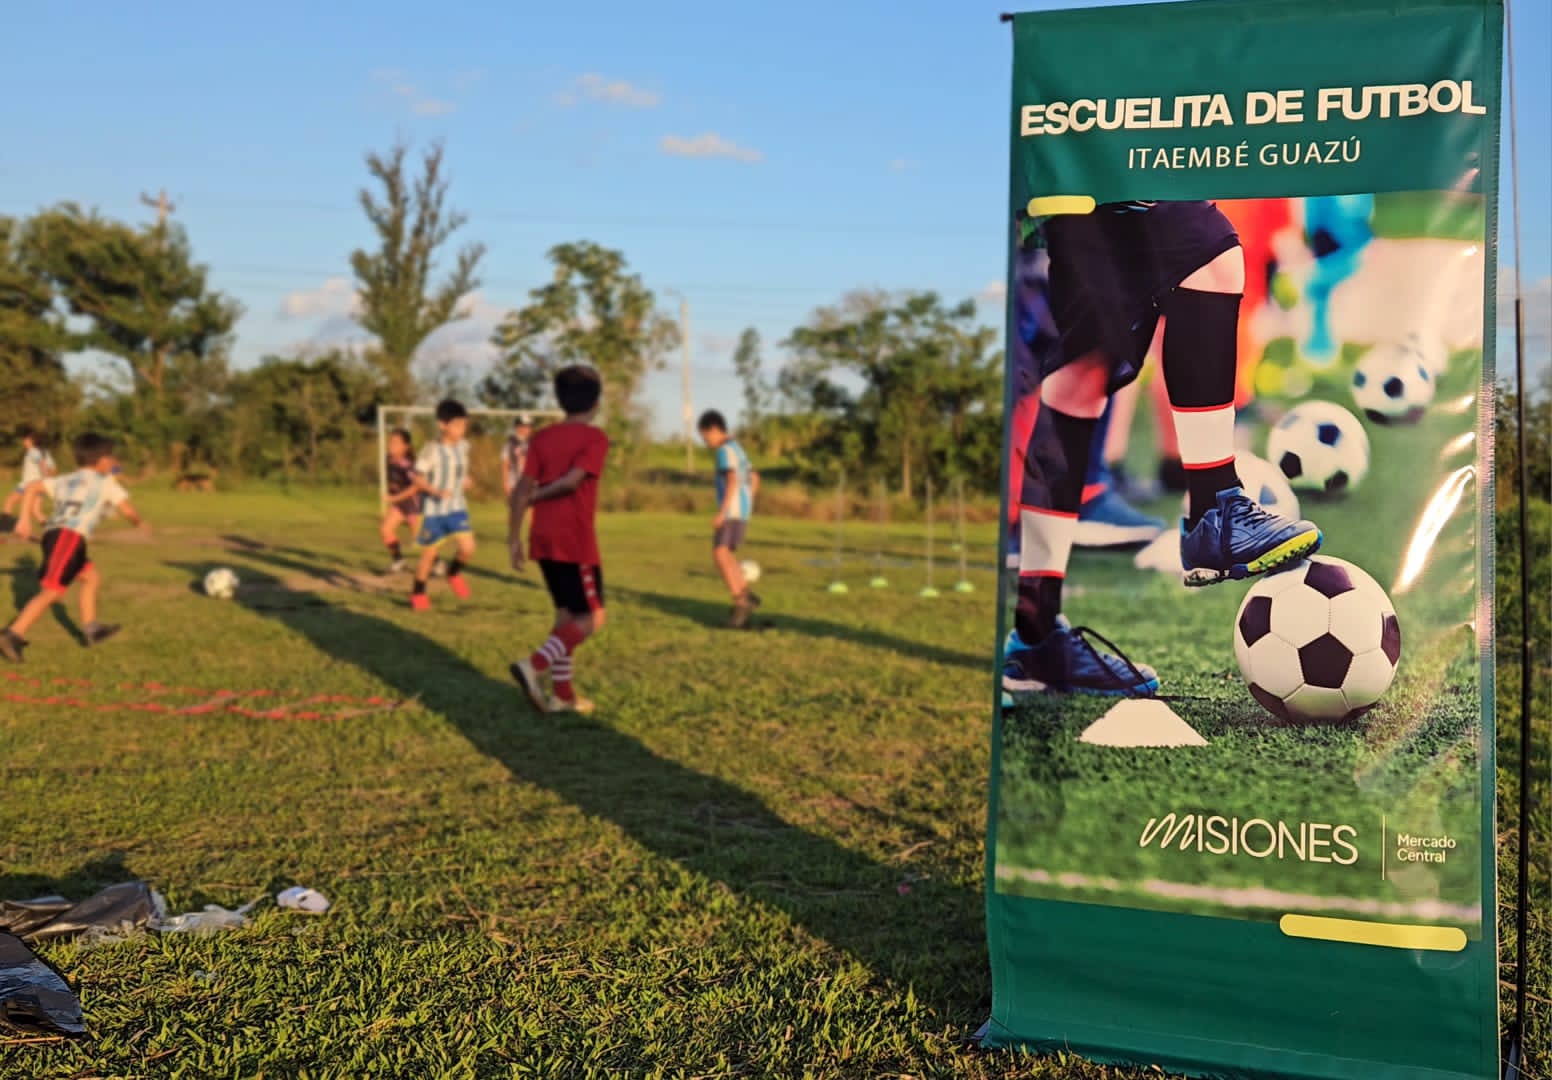 Comunidad de Itaembé Guazú destaca la puesta en funcionamiento de la Escuelita de Fútbol del Mercado Central imagen-61